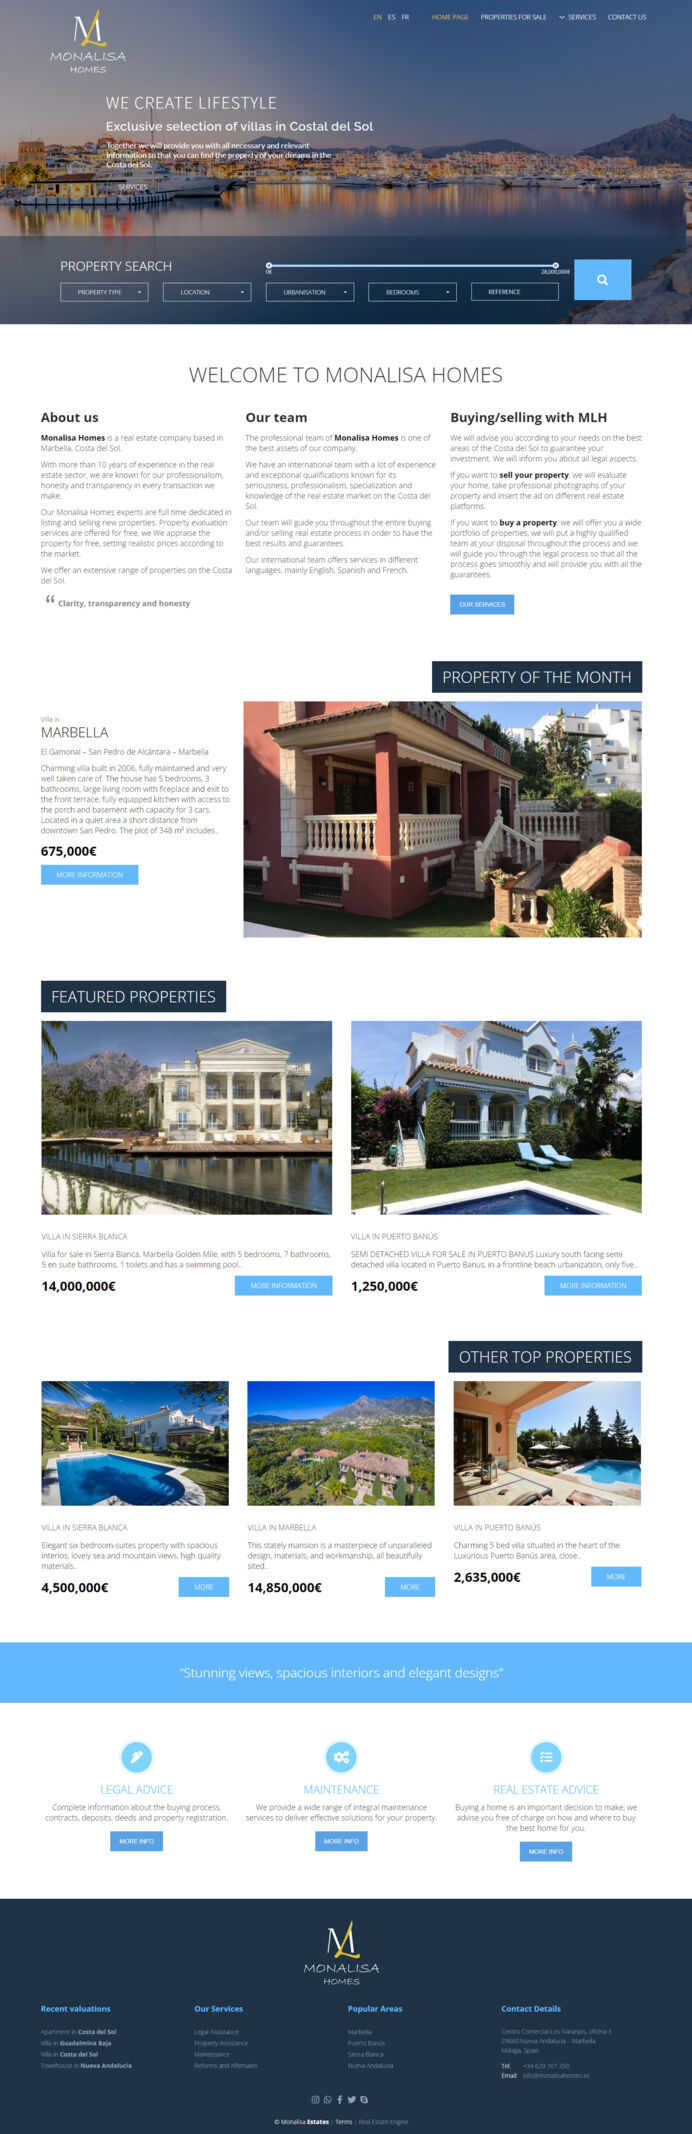 Sitio web exclusivo diseñado y desarrollado para la agencia inmobiliaria Monalisa Homes en Marbella